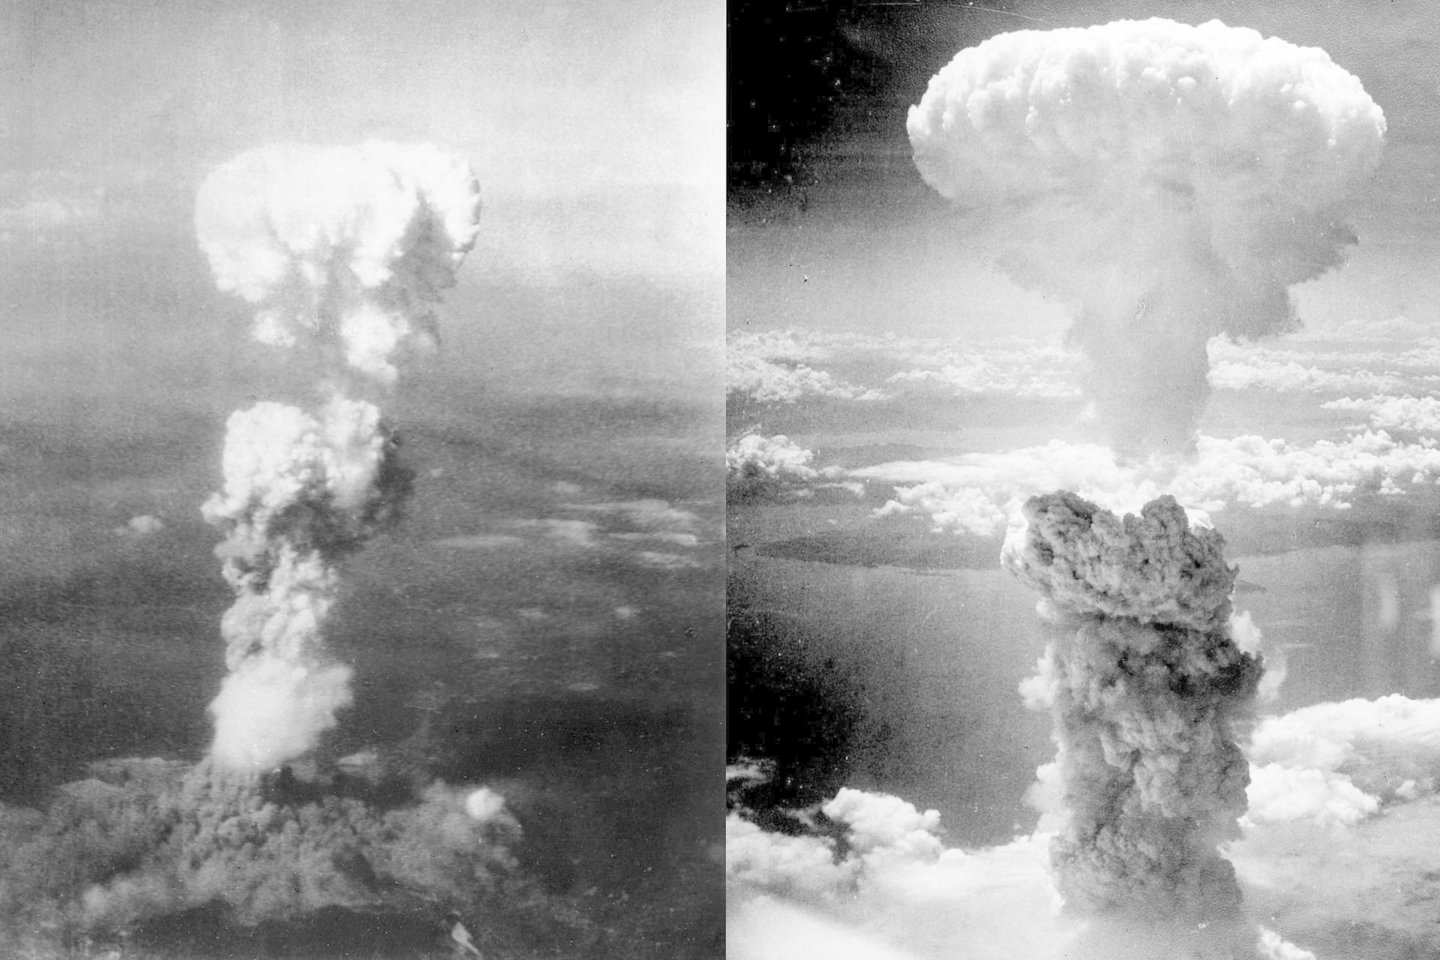  Atominės bombos grybo debesys virš Hirosimos (kairėje) ir Nagasakio (dešinėje)<br> Wikimedia commons